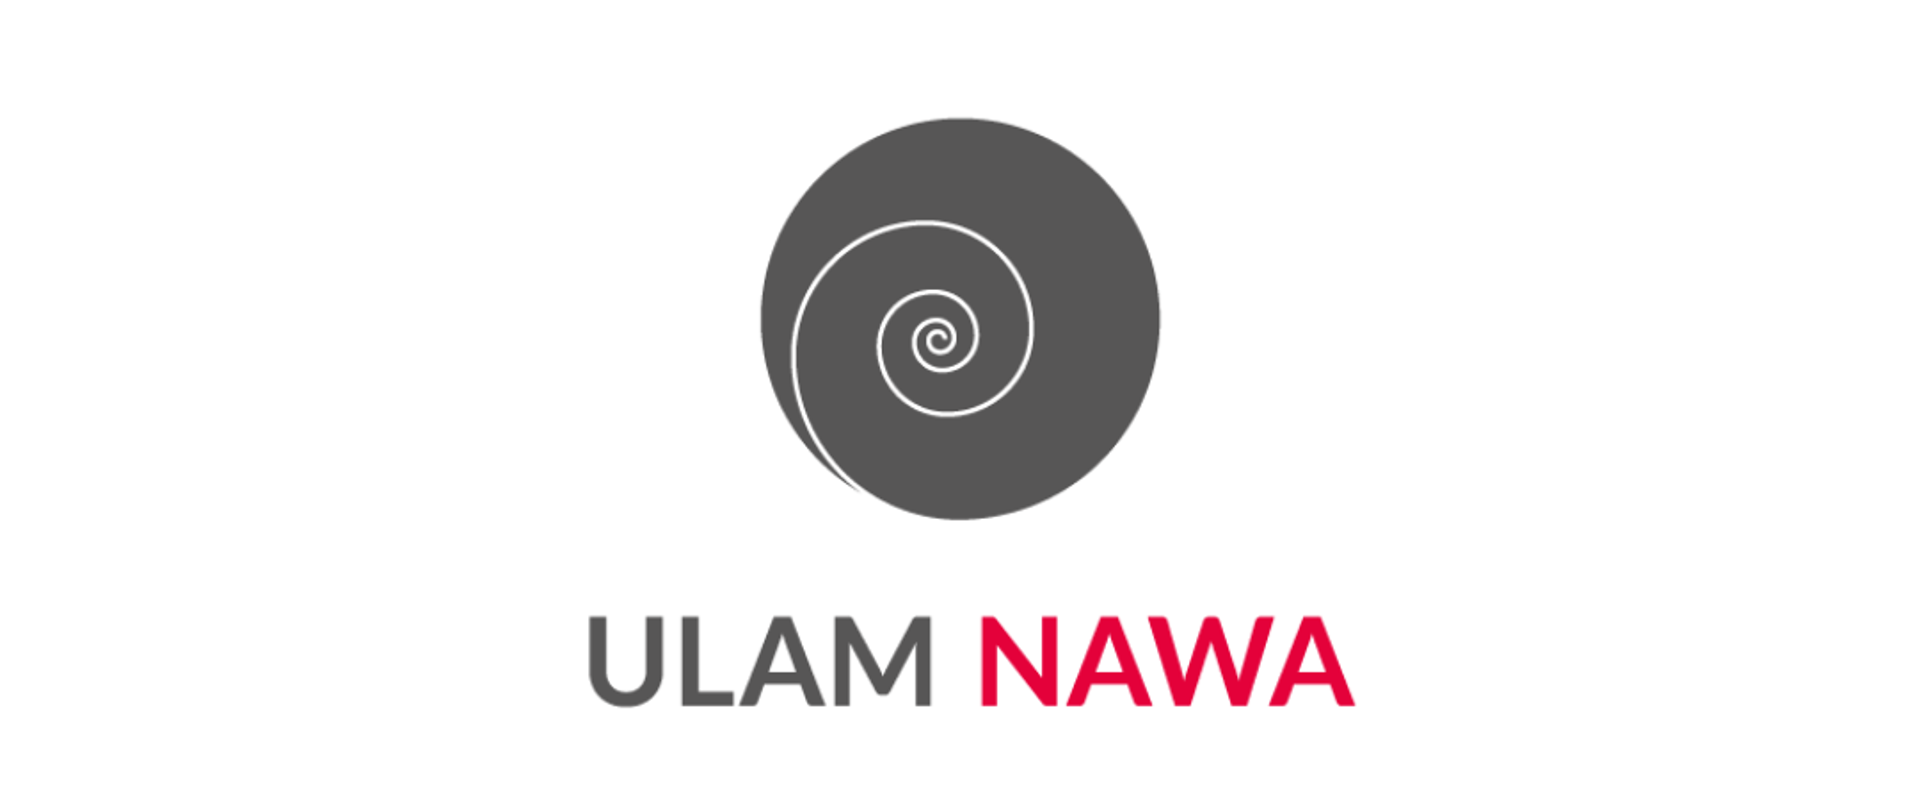 6. edycja programu stypendialnego Ulam NAWA